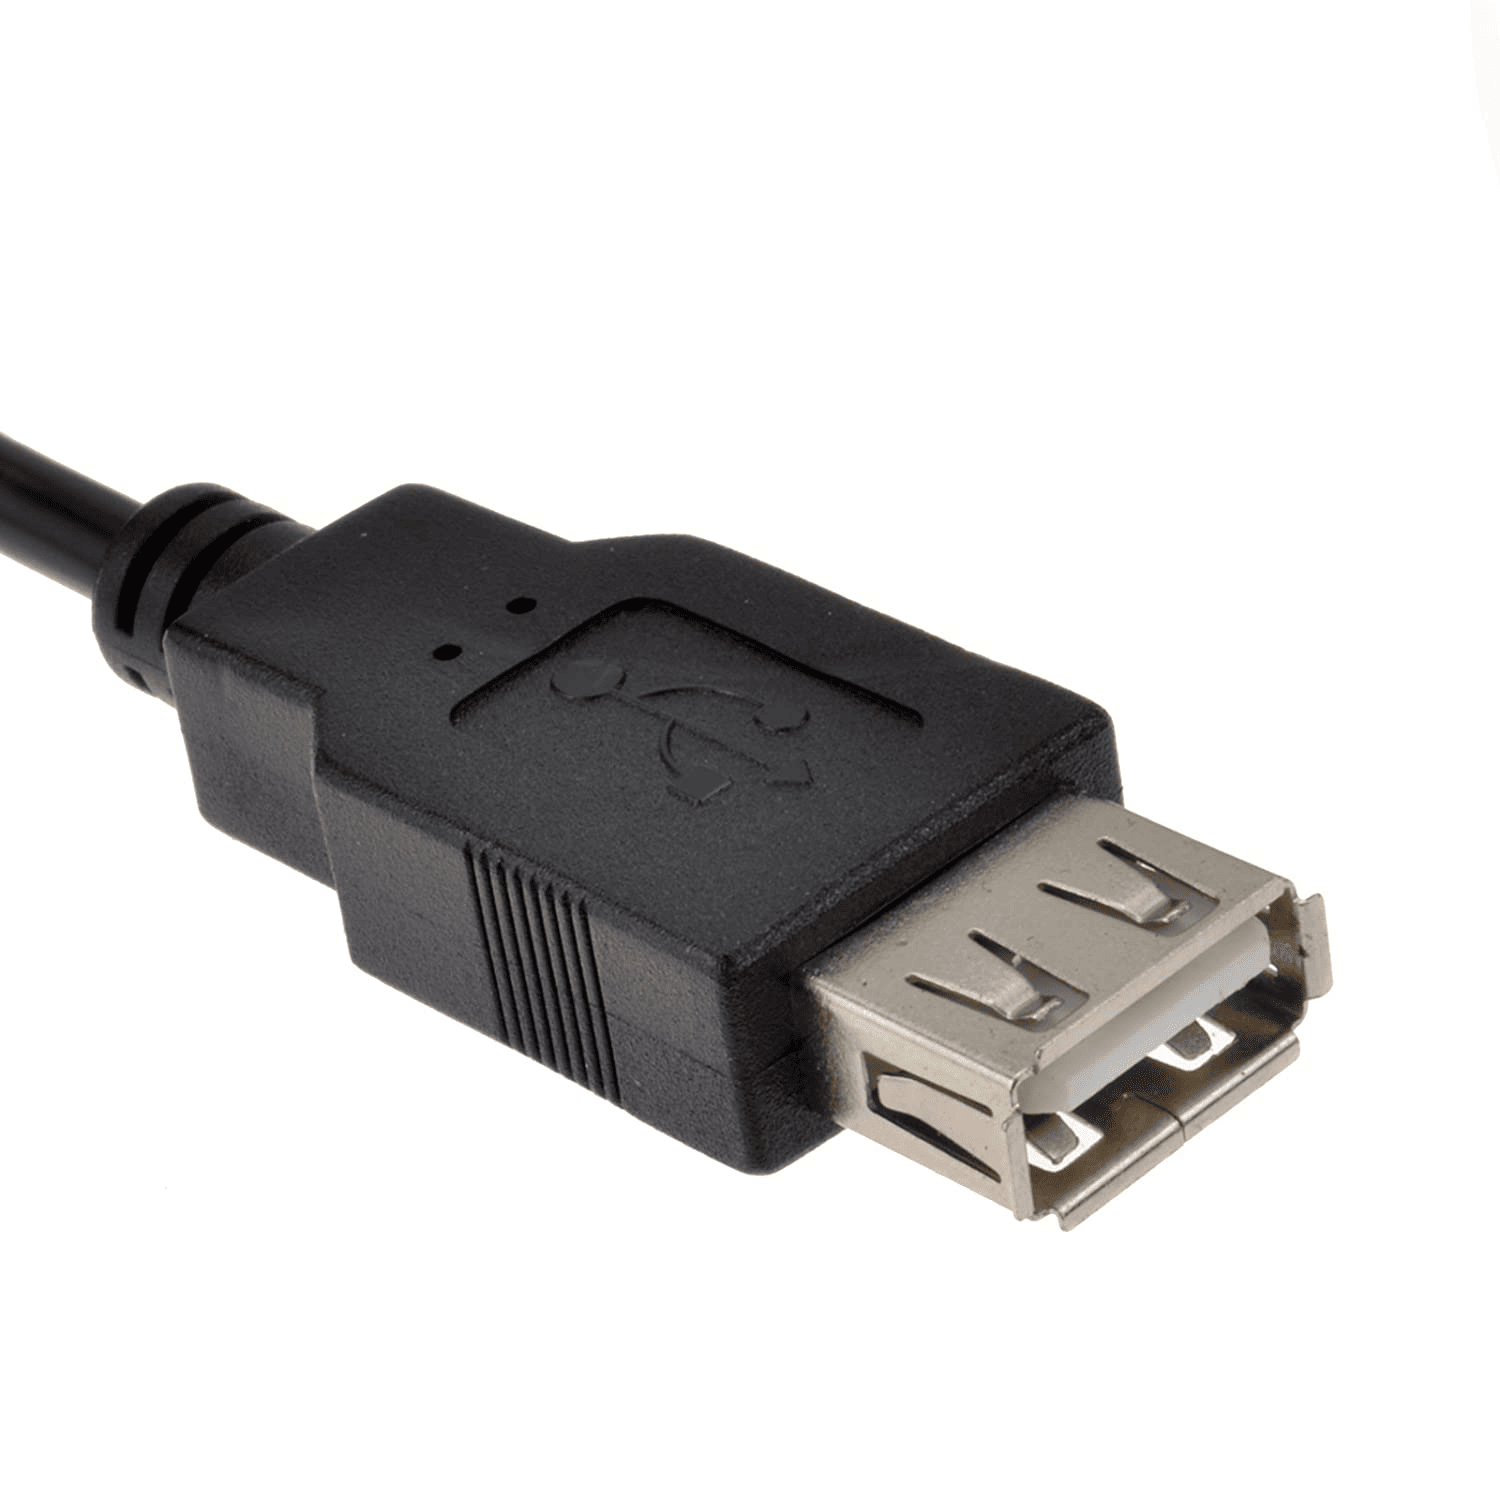 Cable alargador extensor USB 2.0 3 M Negro